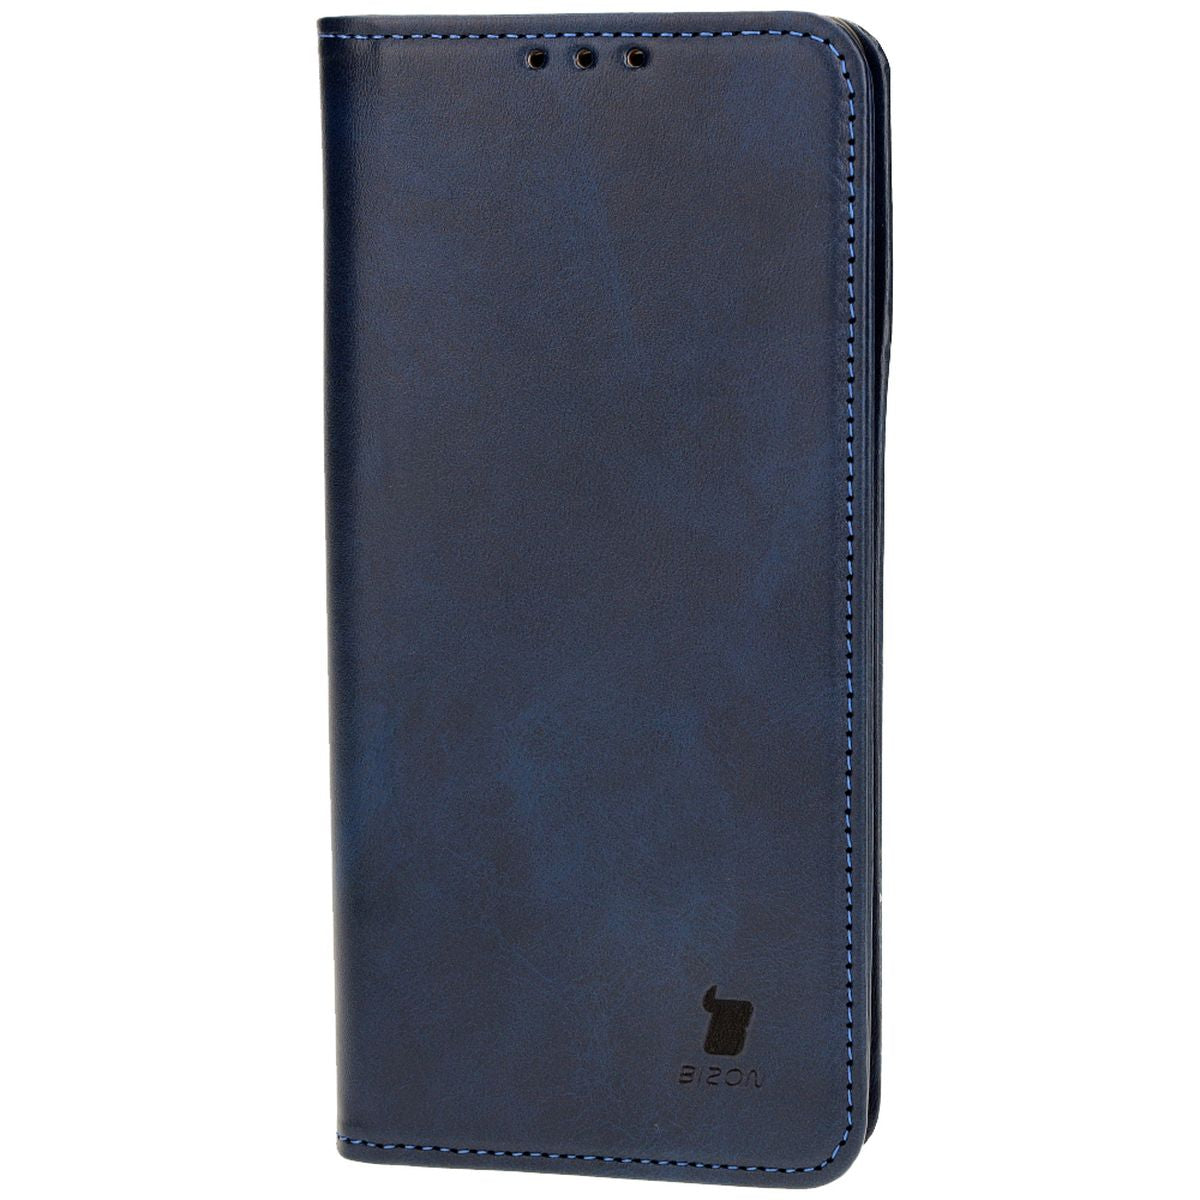 Schutzhülle für OnePlus 12R, Bizon Case Pocket Pro, Dunkelblau